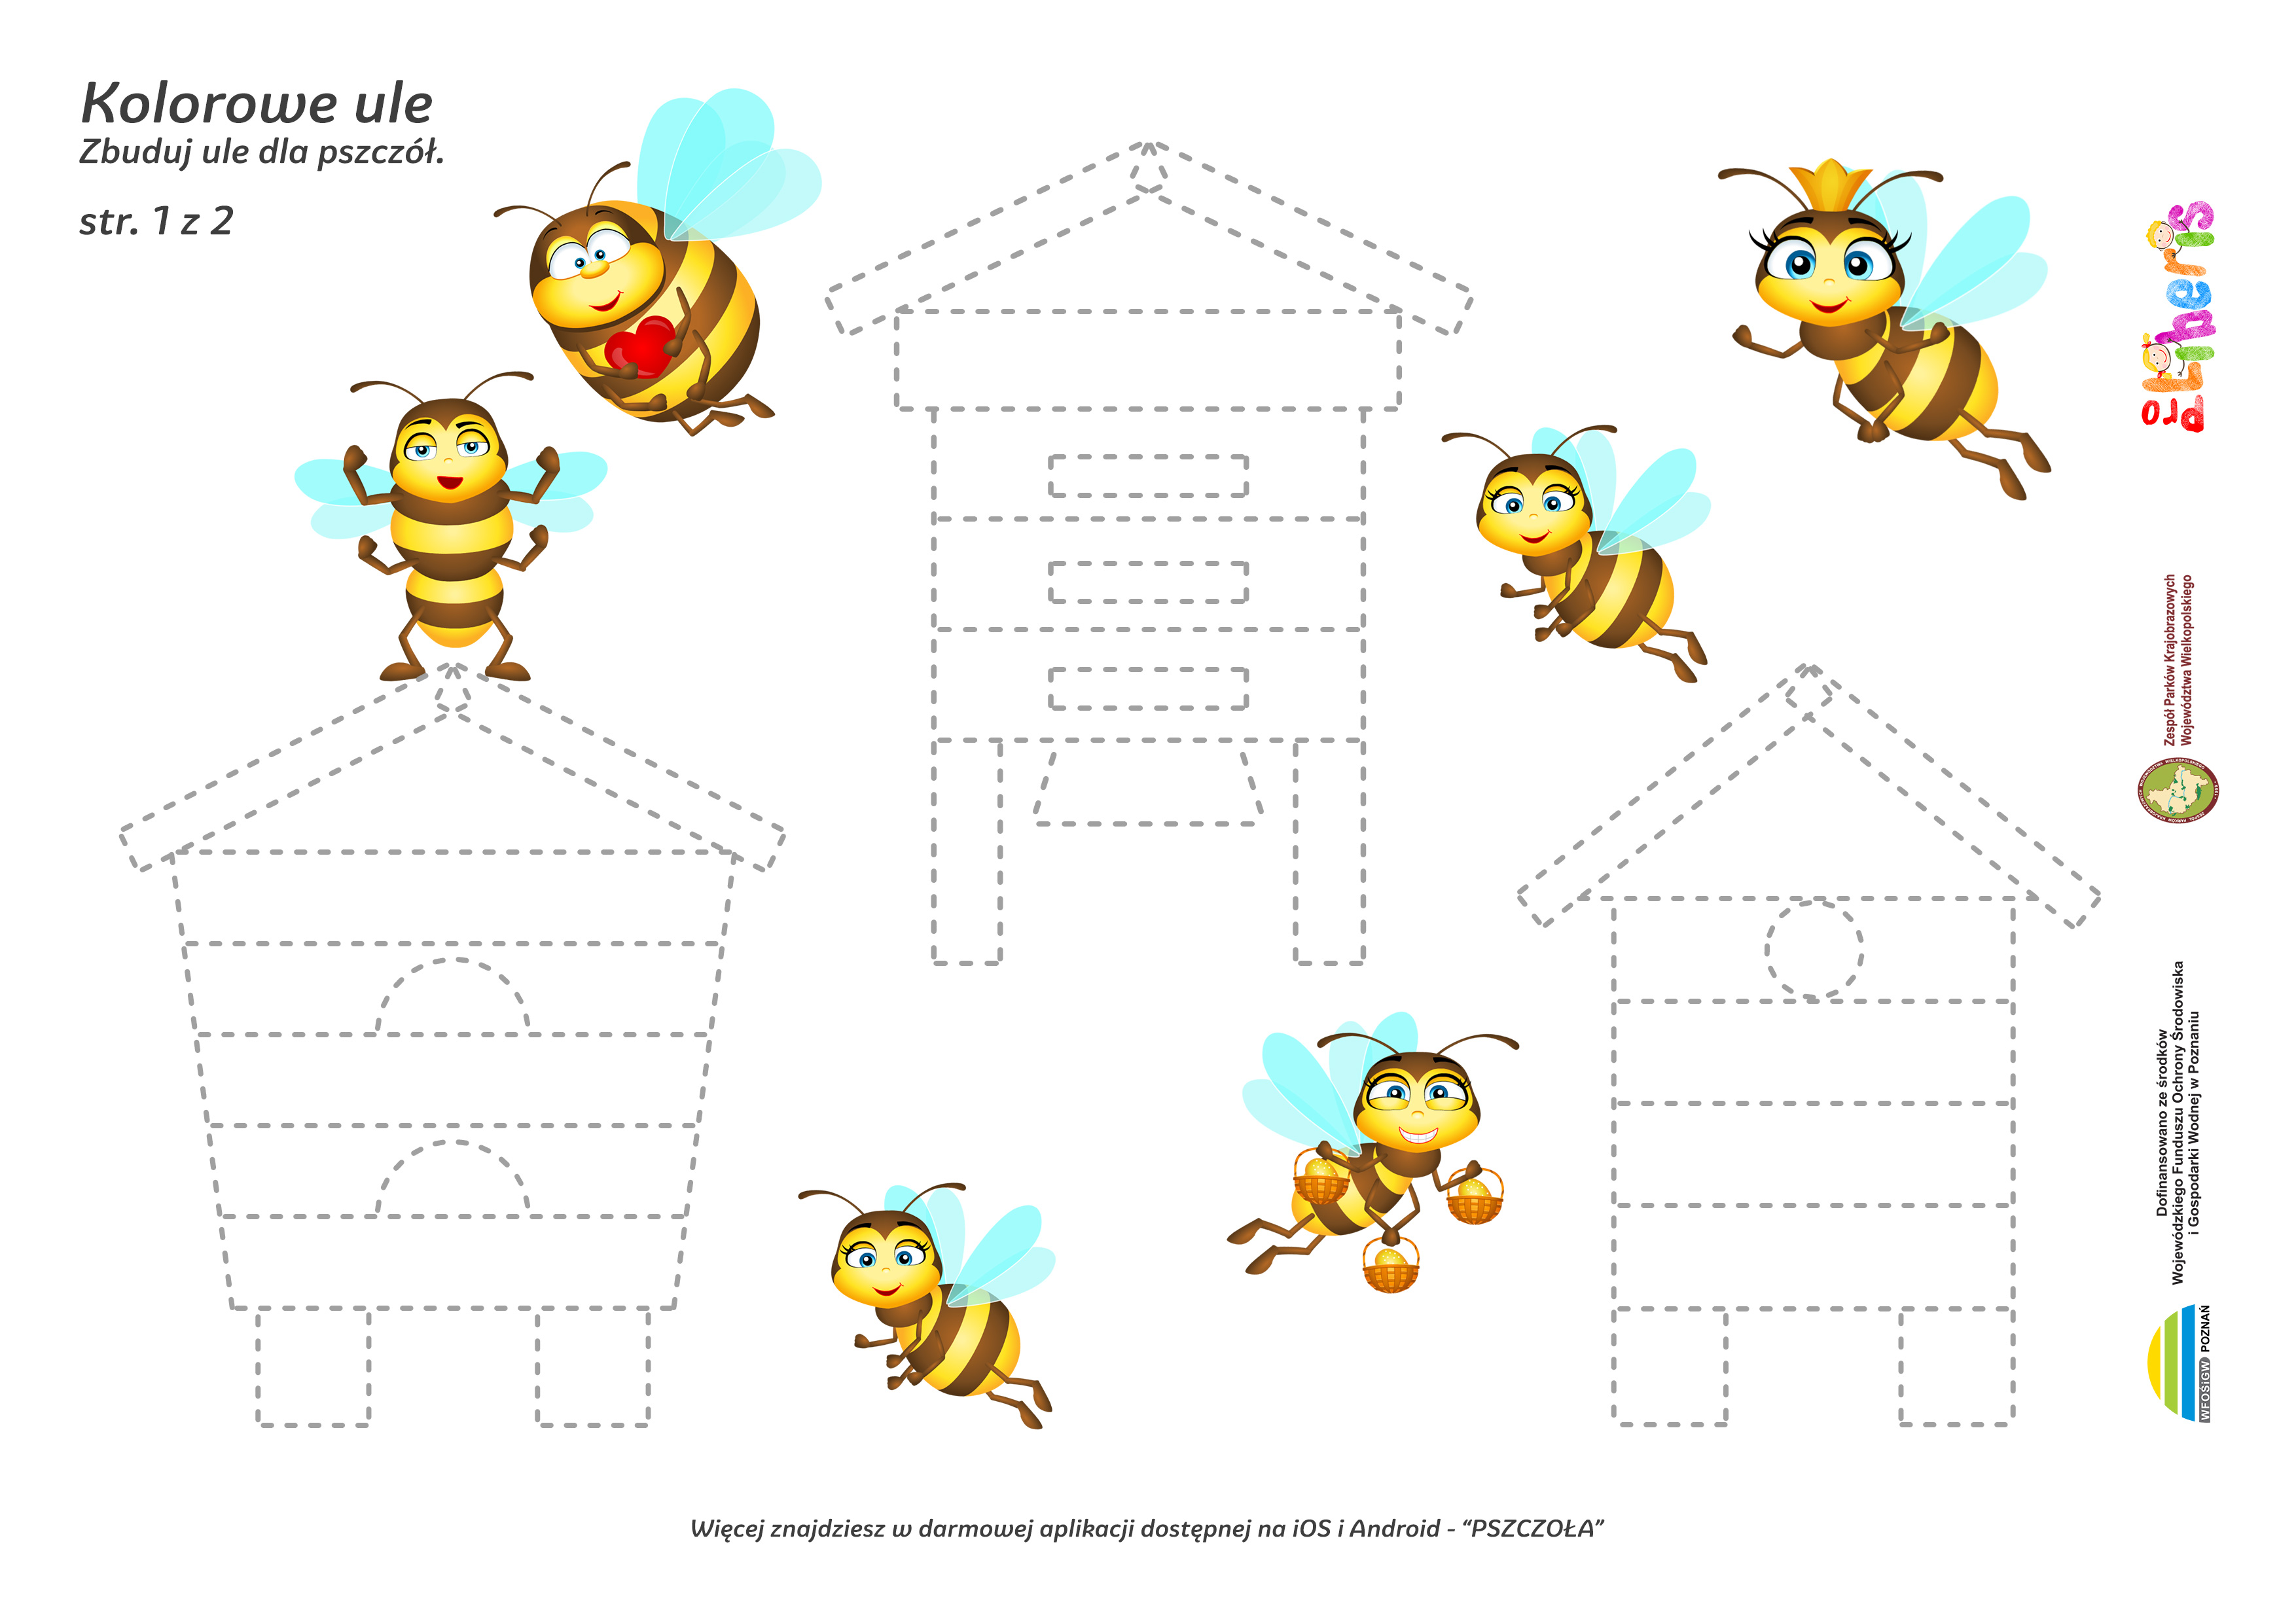 Kolorowe ule - zbuduj ule dla pszczół